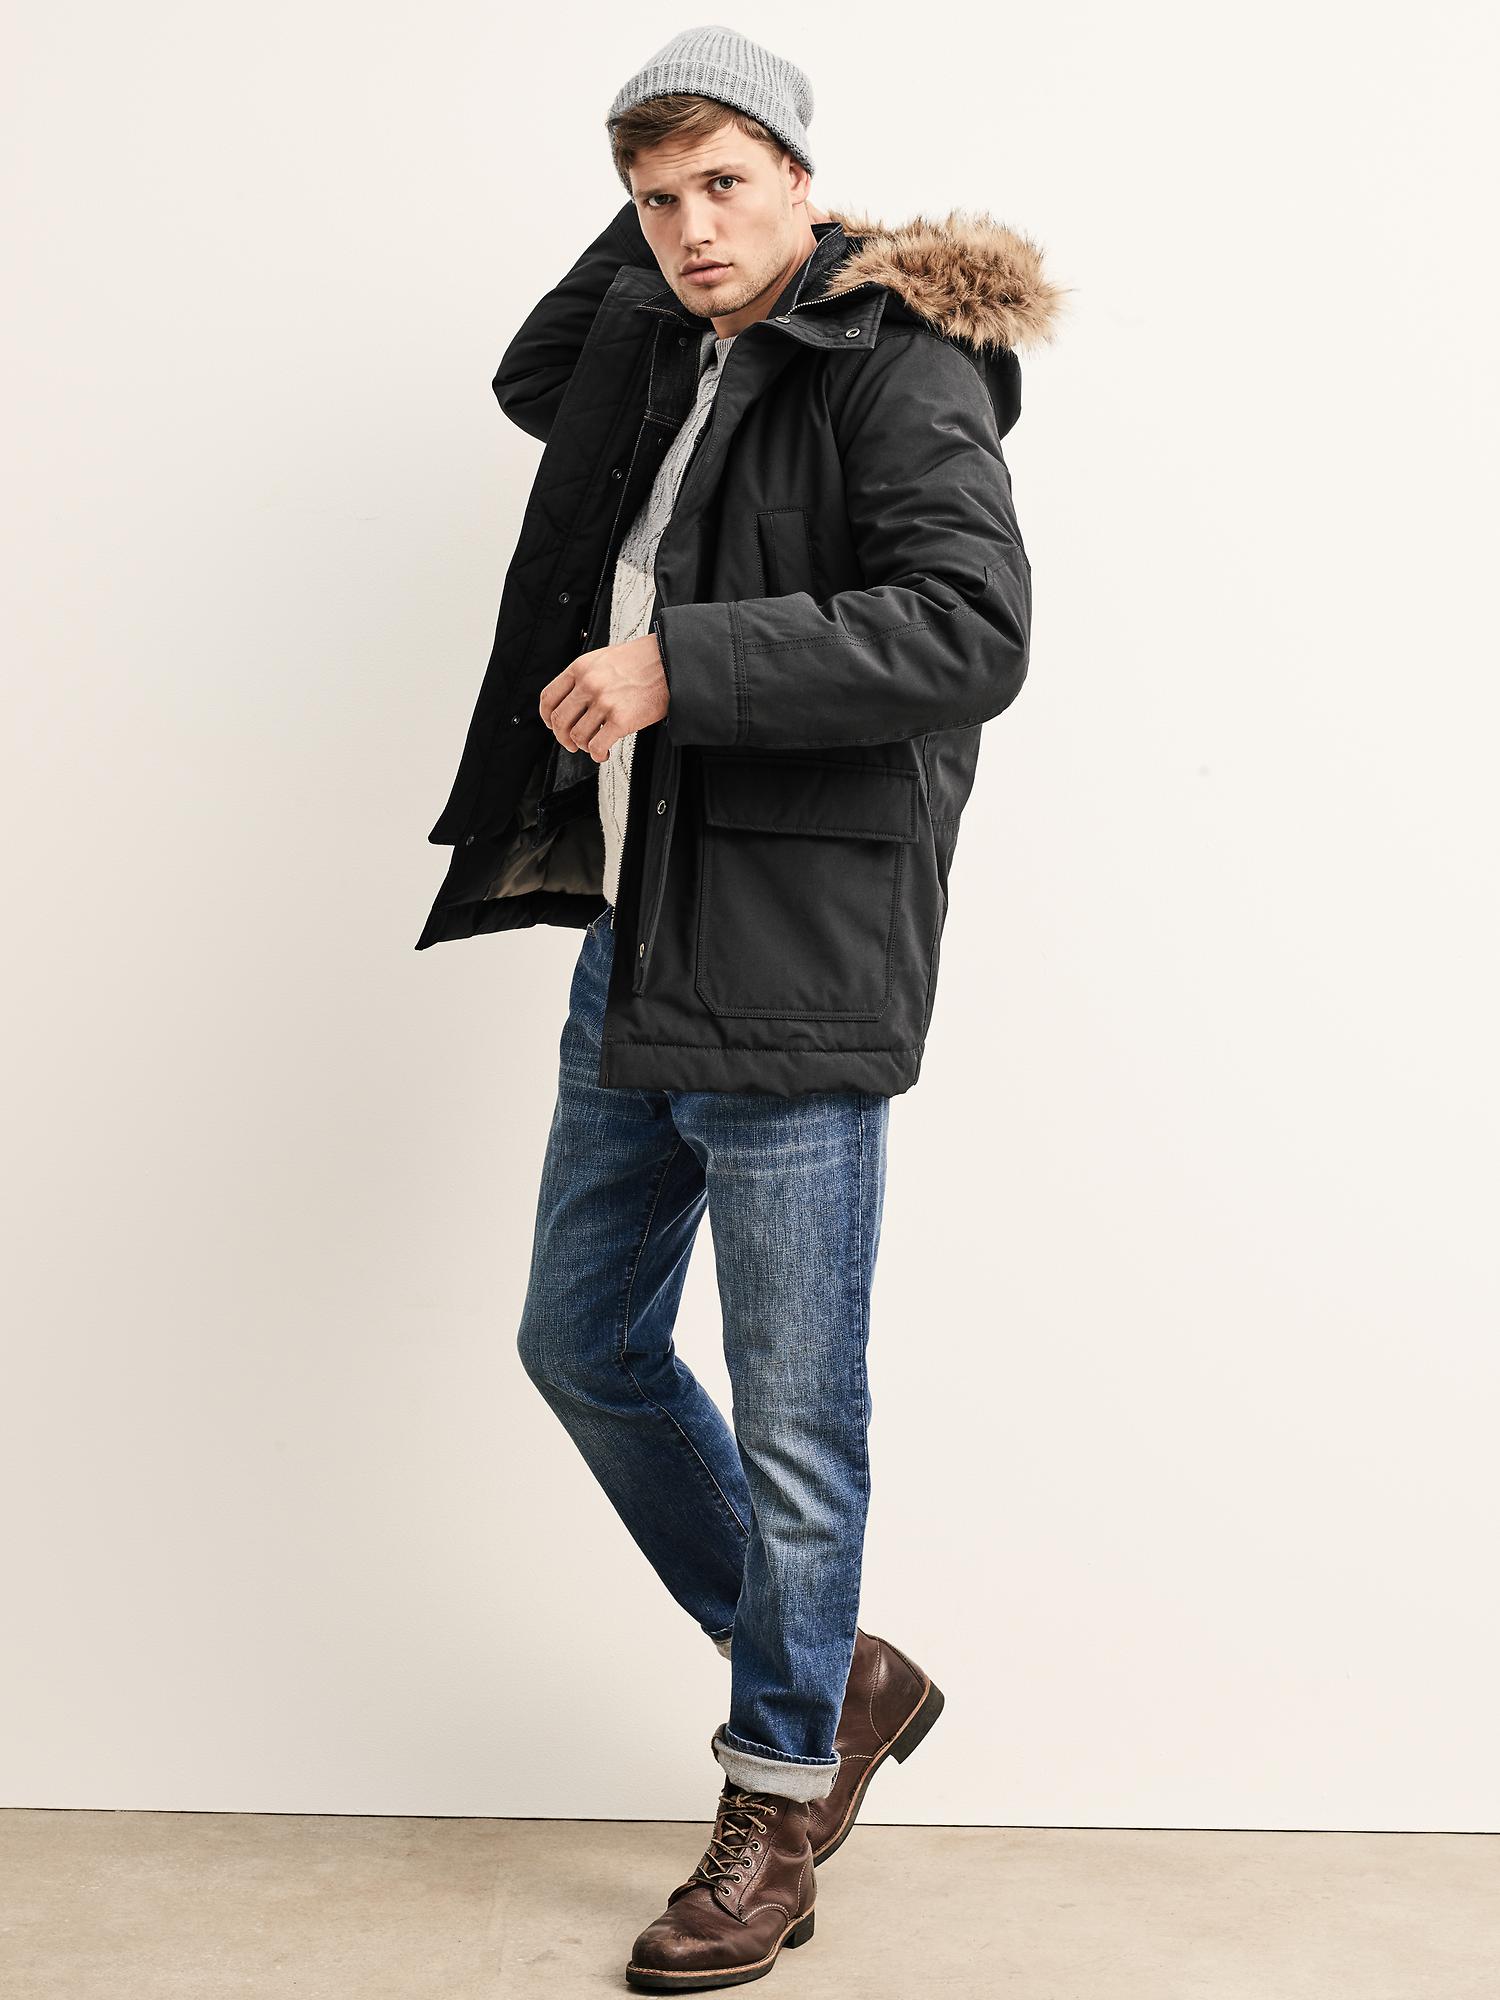 GAP Snorkel Parka Black ColdControl Max Full Zip Faux Fur Hooded Jacket  Mens XL